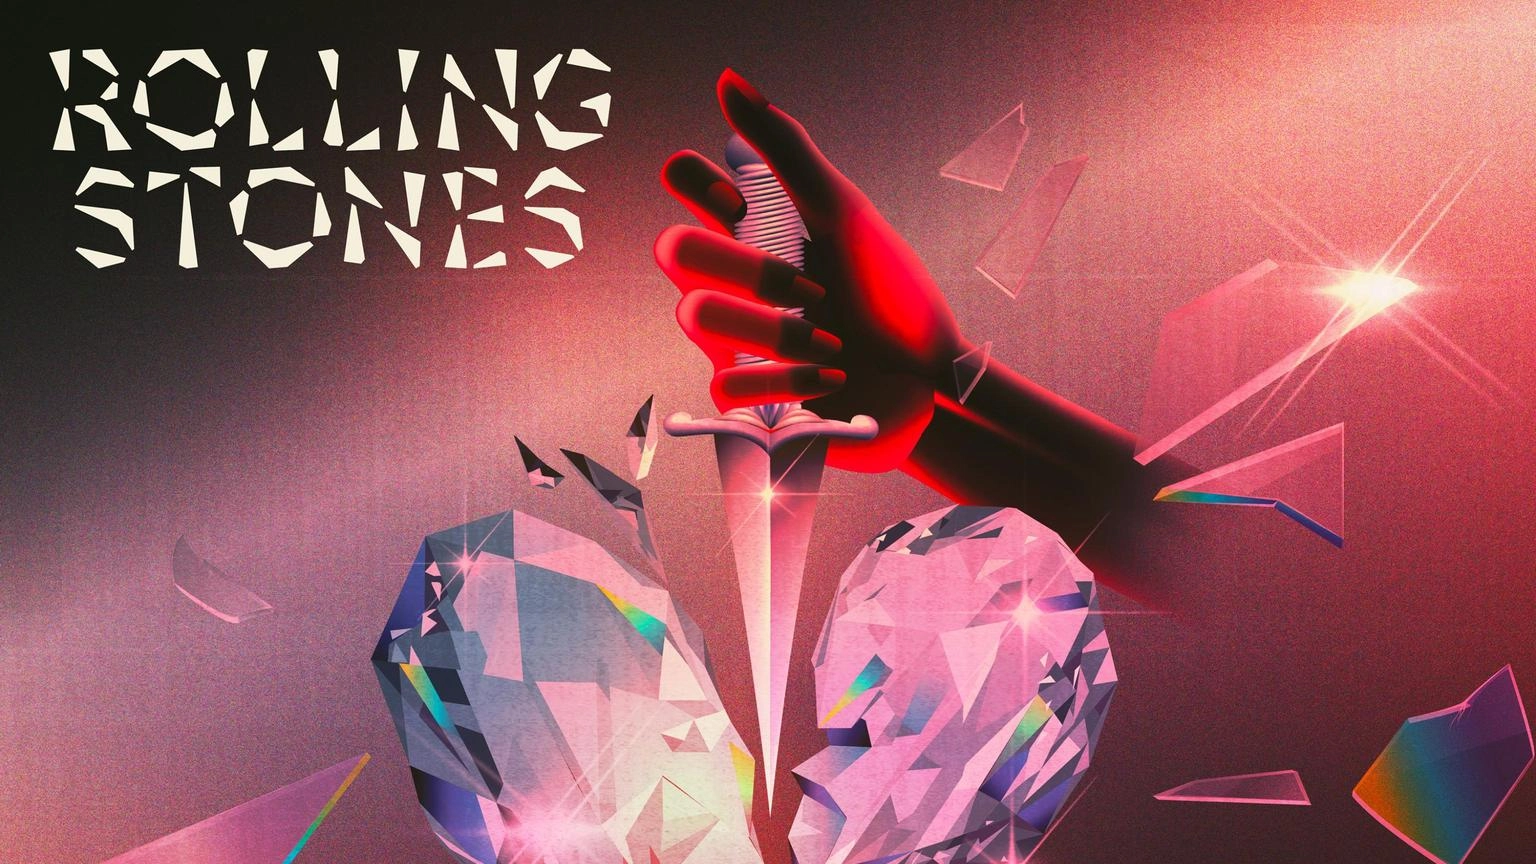 Il nuovo album dei Rolling Stones uscira' il 20 ottobre